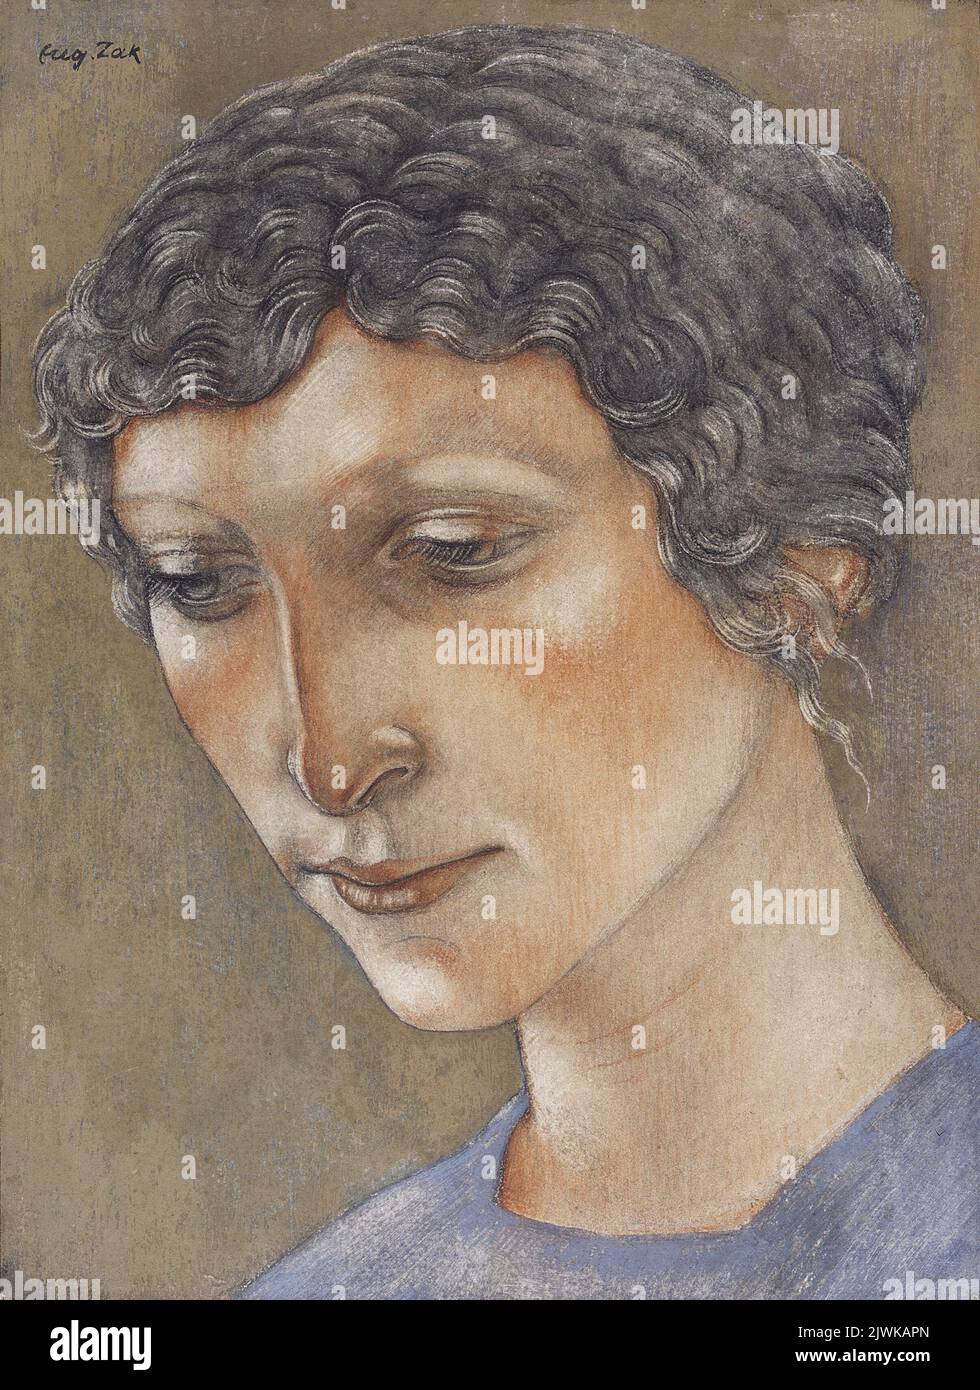 La testa della donna. Zak, Eugeniusz (1884-1926), disegnatore, cartoonista Foto Stock